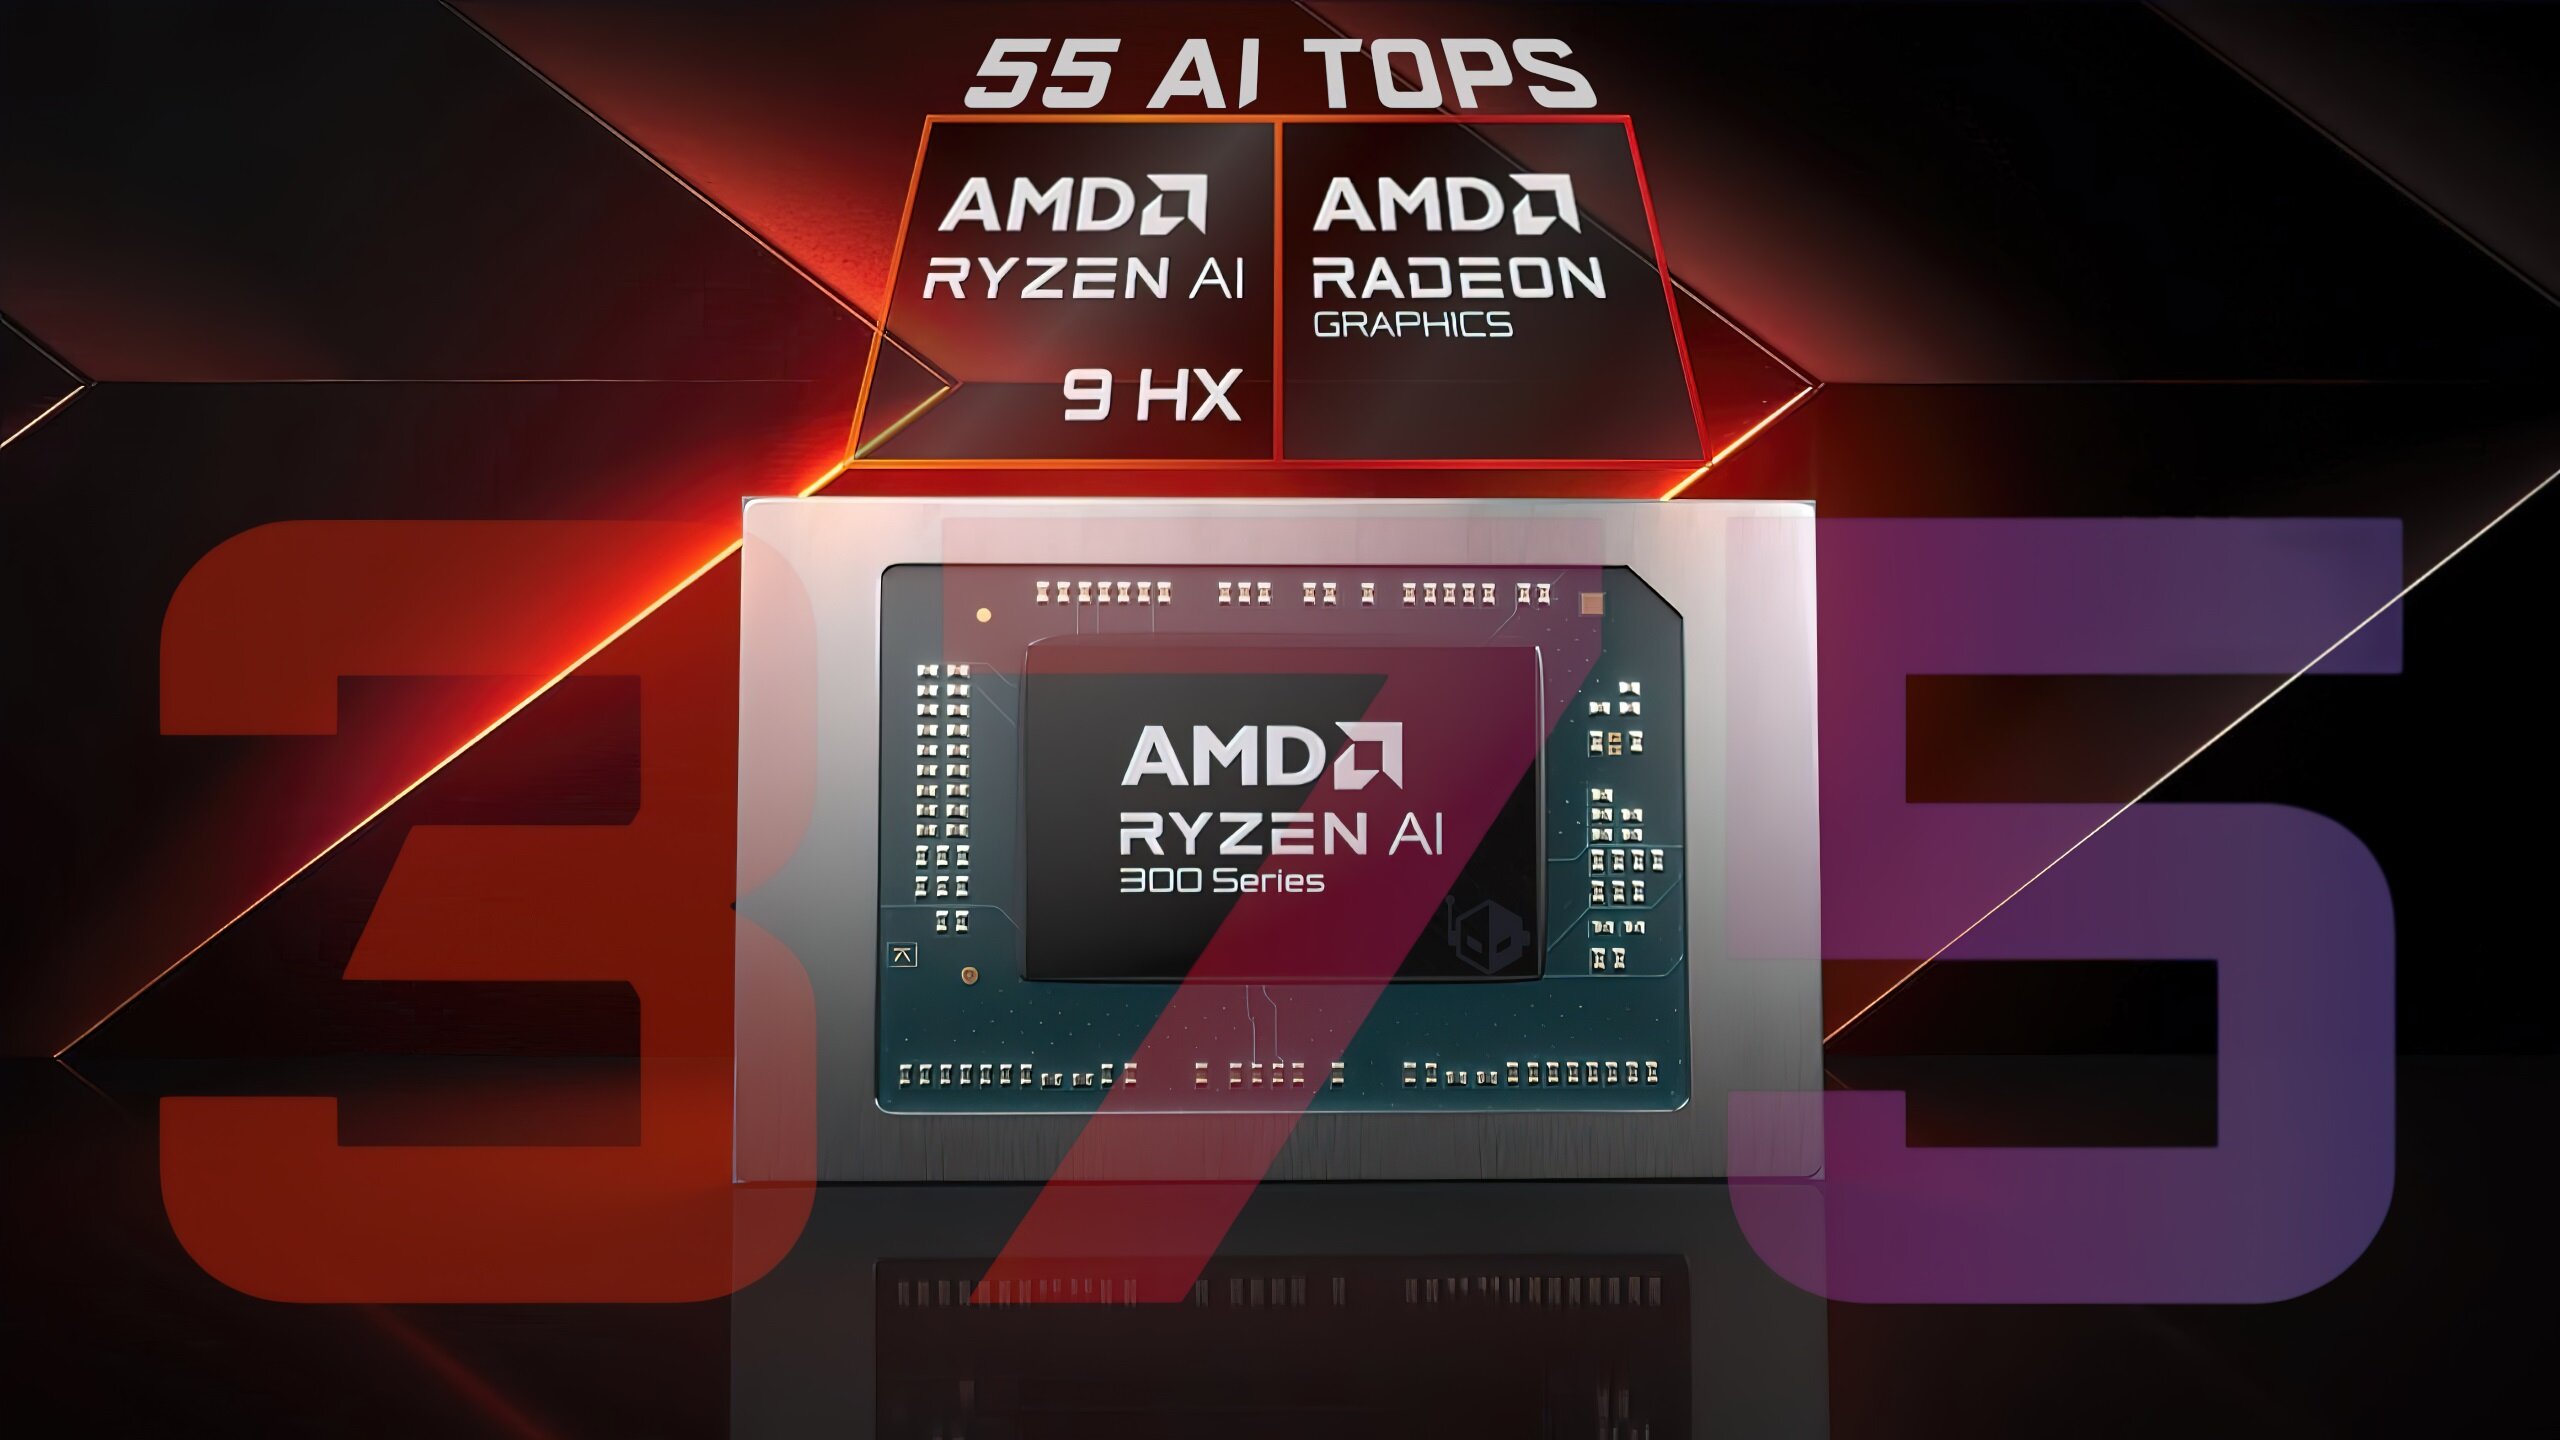 Быстрейший NPU на сегодняшний день: AMD представила Ryzen AI 9 HX 375